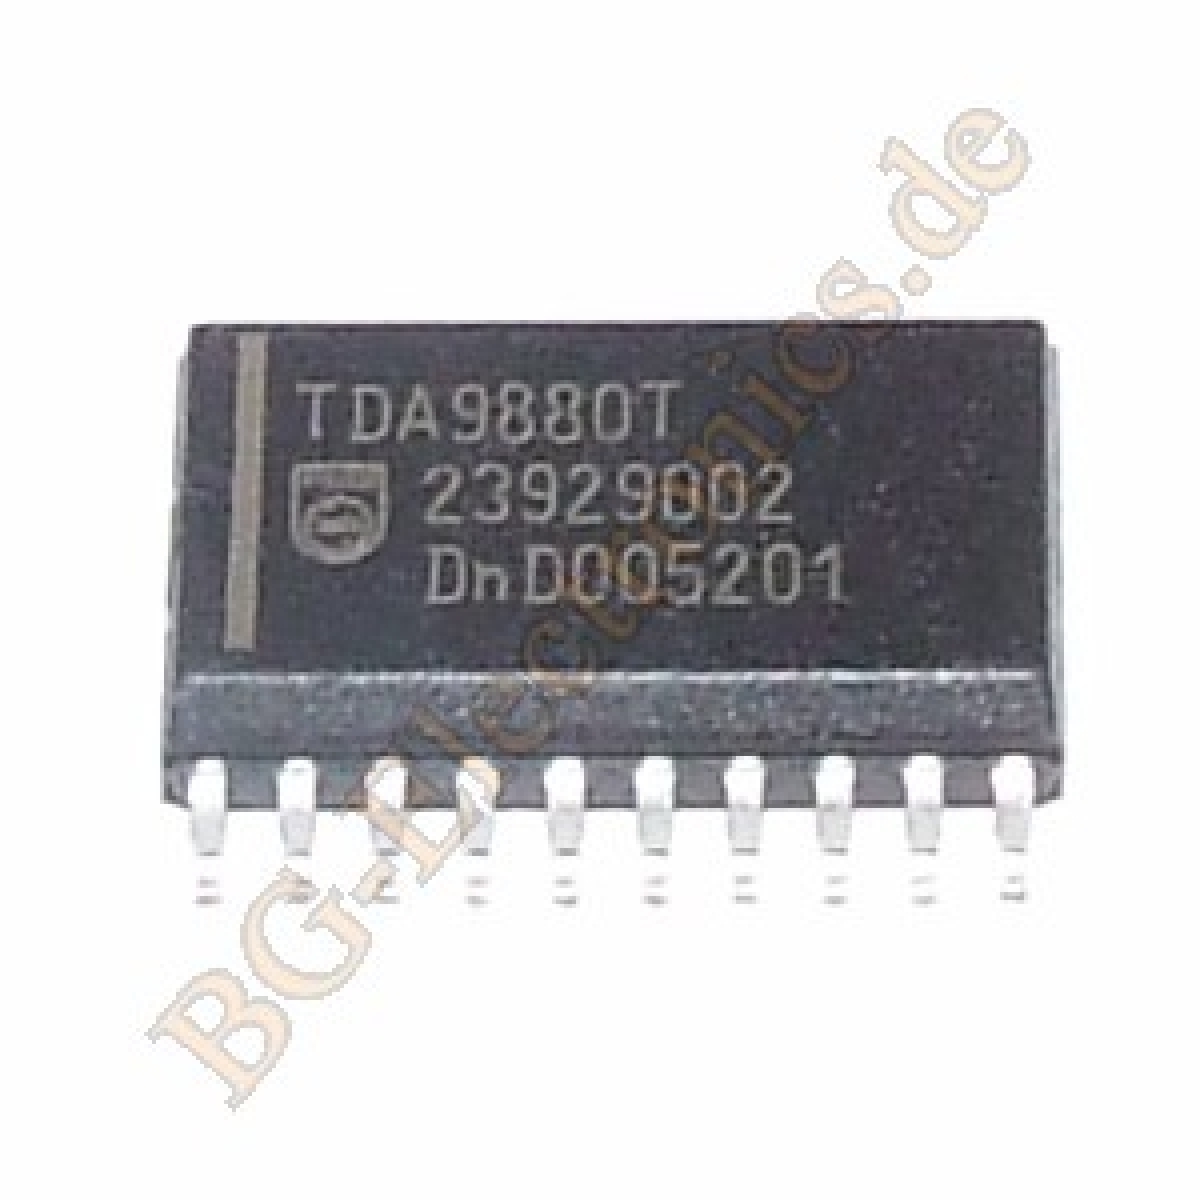 TDA9880T